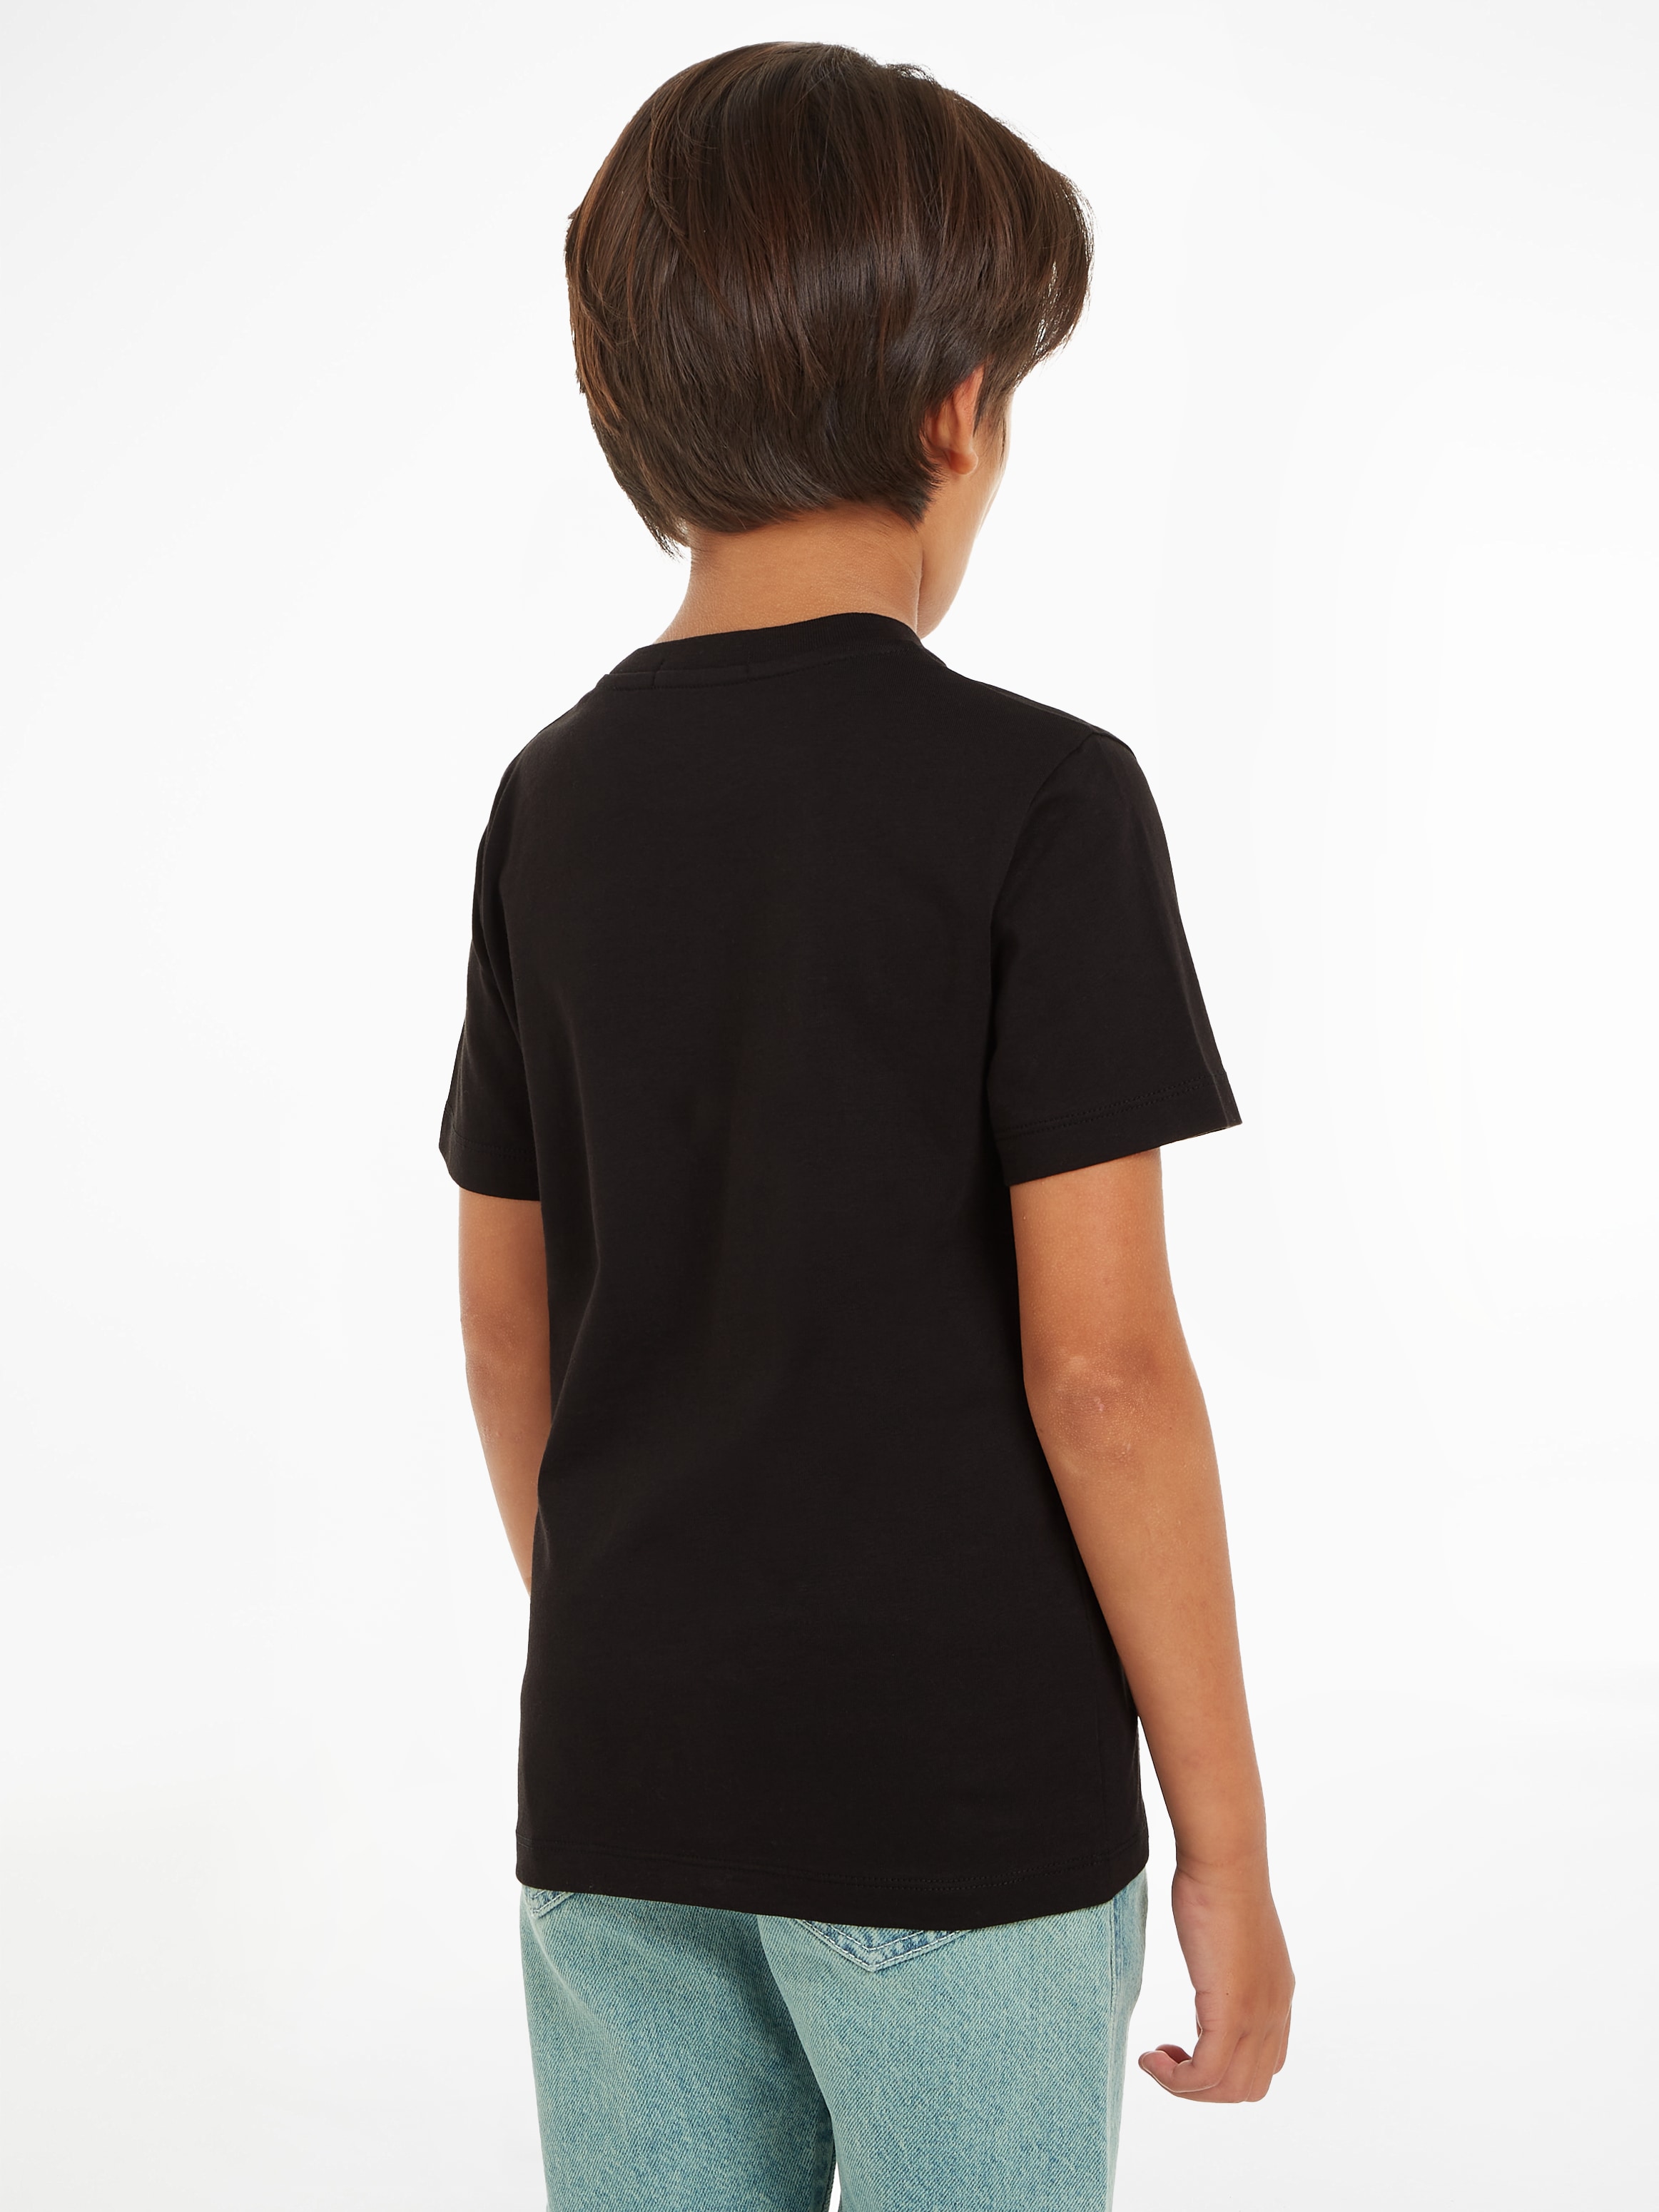 Calvin Klein online REG. 16 T-Shirt T-SHIRT«, Kinder »MINI bis Jeans INST.LOGO Jahre SS